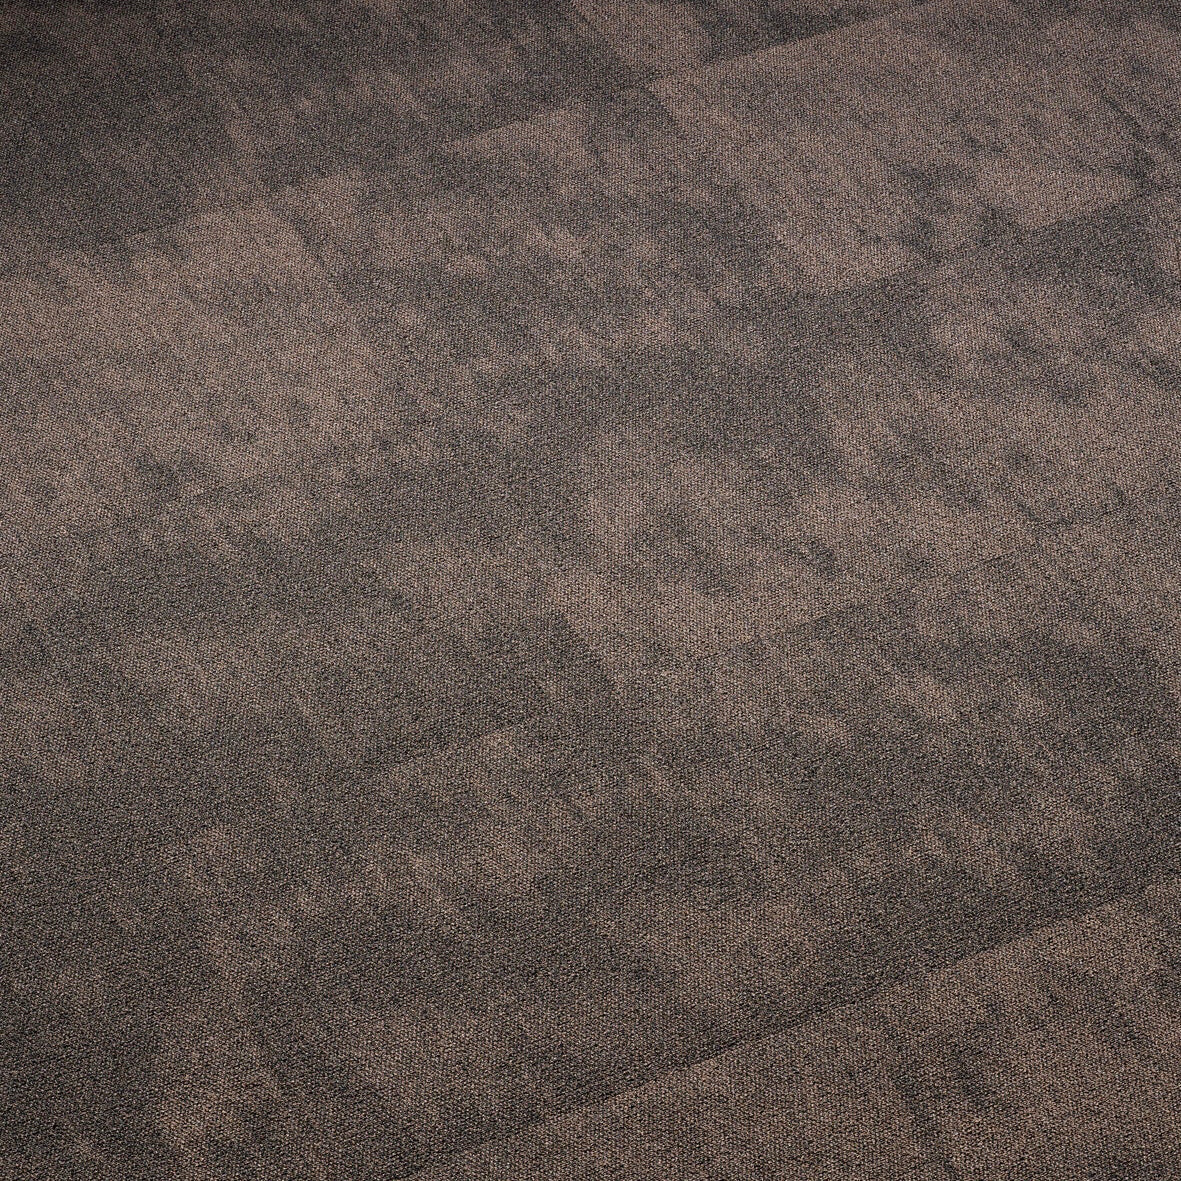 Plusfloor Sidewalk Sepia Terrace carpet tiles for offices 100% Nylon